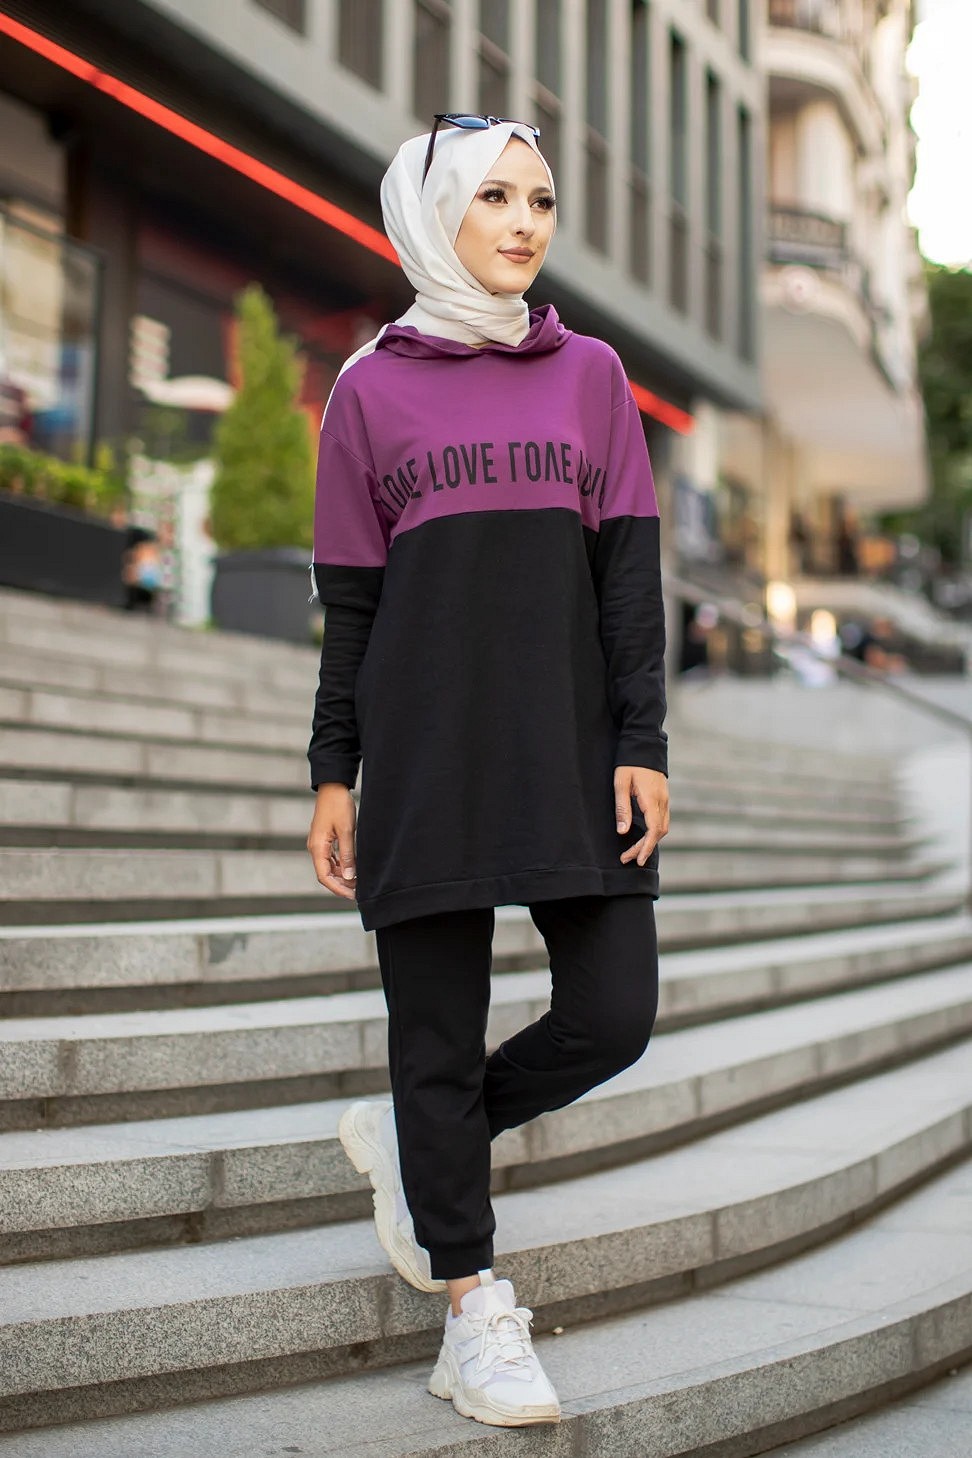 Vêtement de sport (ensemble 2 pièces) pour femme musulmane sportive -  Couleur gris clair